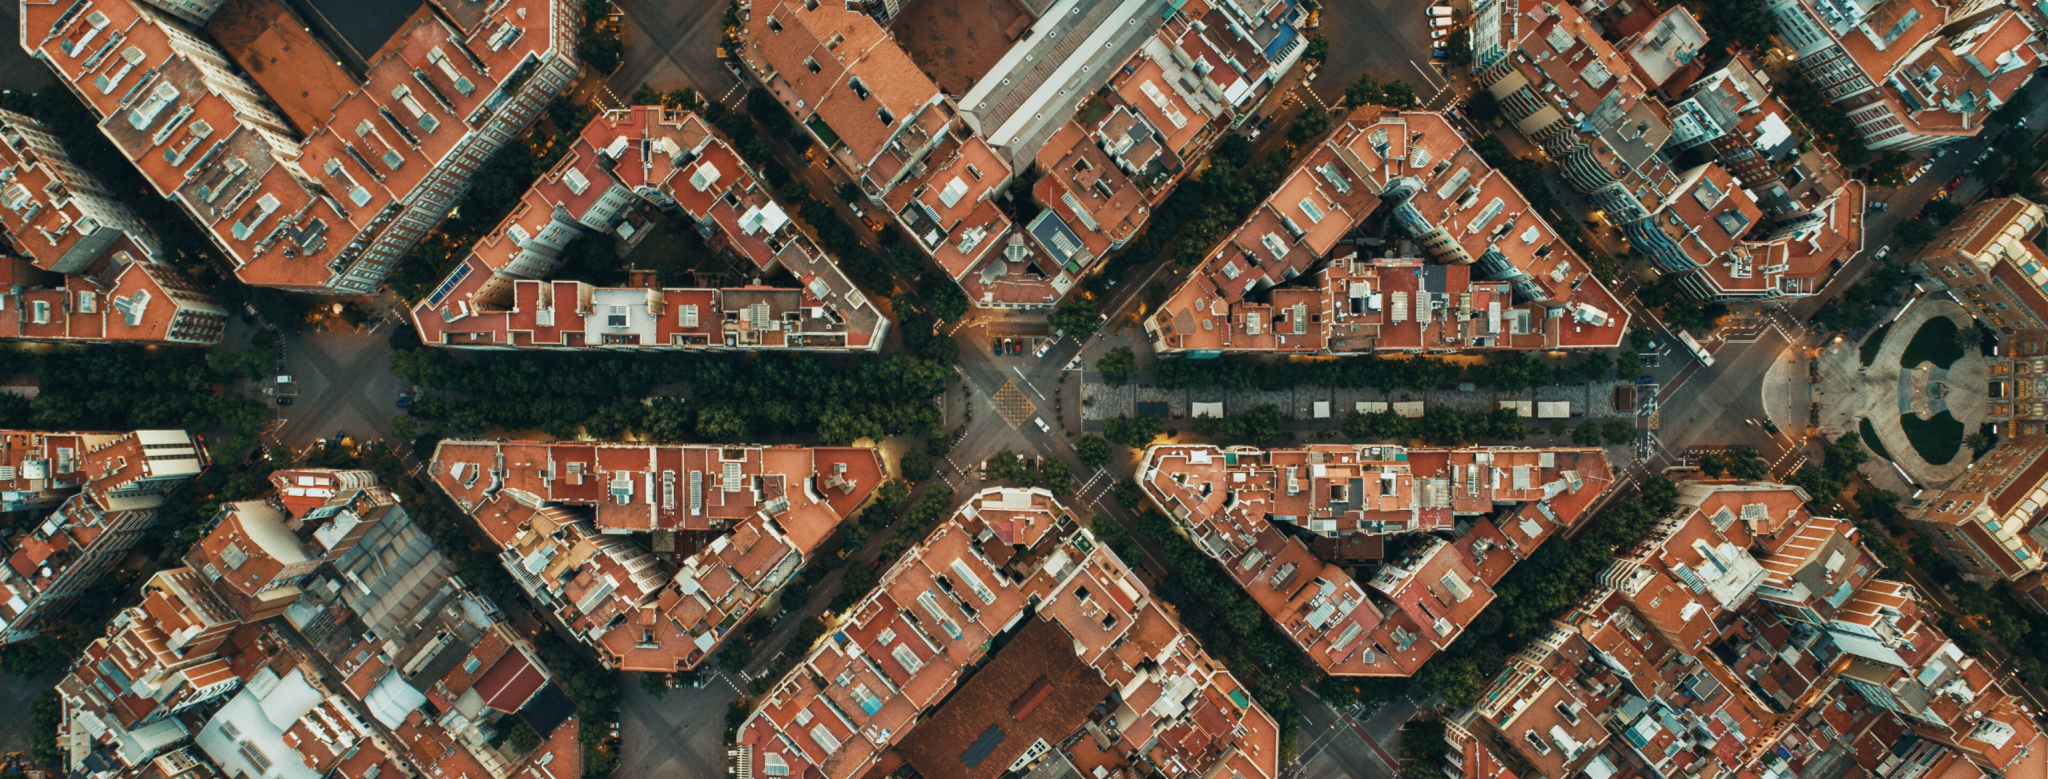 barcelona smart cities